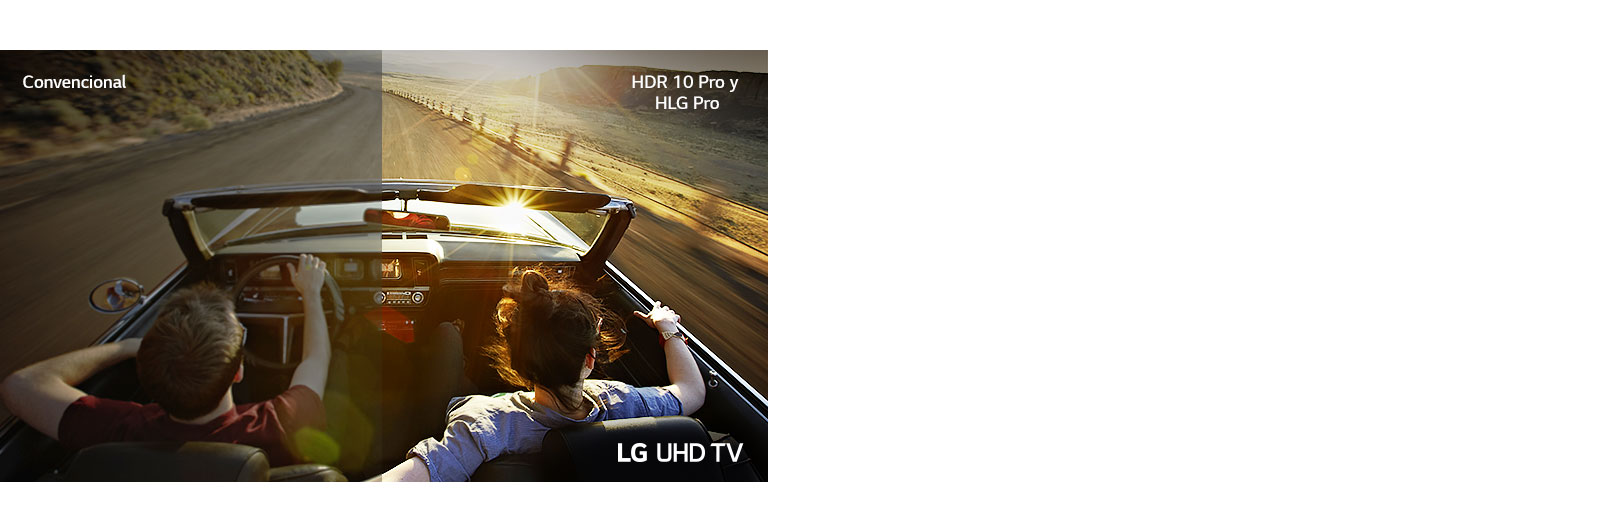 Una pareja en un coche conduciendo por una carretera. La mitad se muestra en una pantalla convencional con baja calidad de imagen. La otra mitad se muestra con una calidad de imagen de TV LG UHD nítida y vívida.